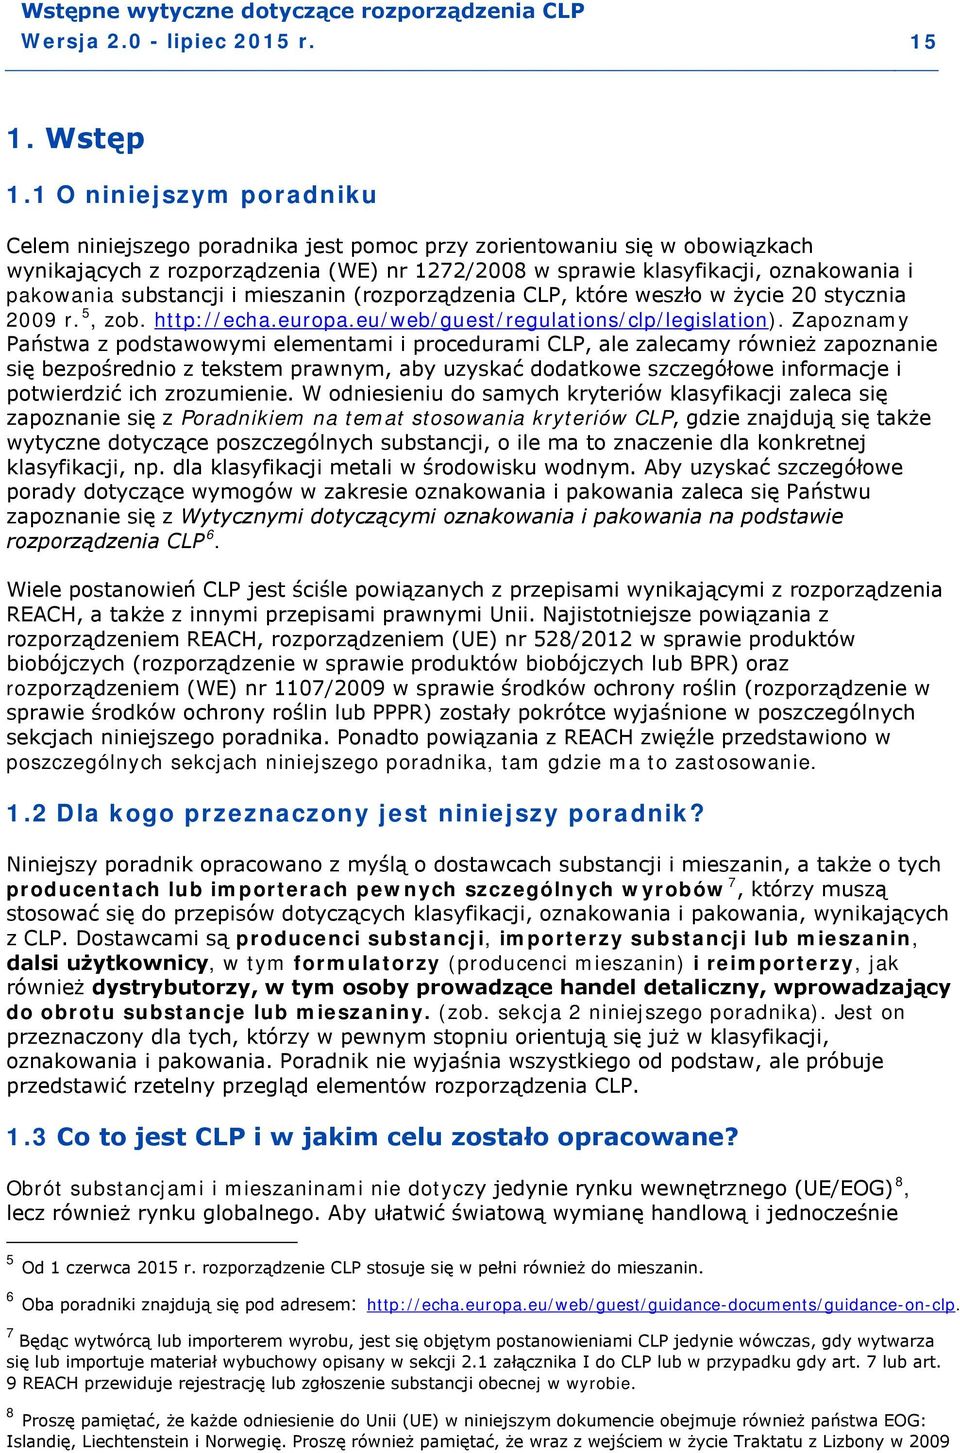 substancji i mieszanin (rozporządzenia CLP, które weszło w życie 20 stycznia 2009 r. 5, zob. http://echa.europa.eu/web/guest/regulations/clp/legislation).